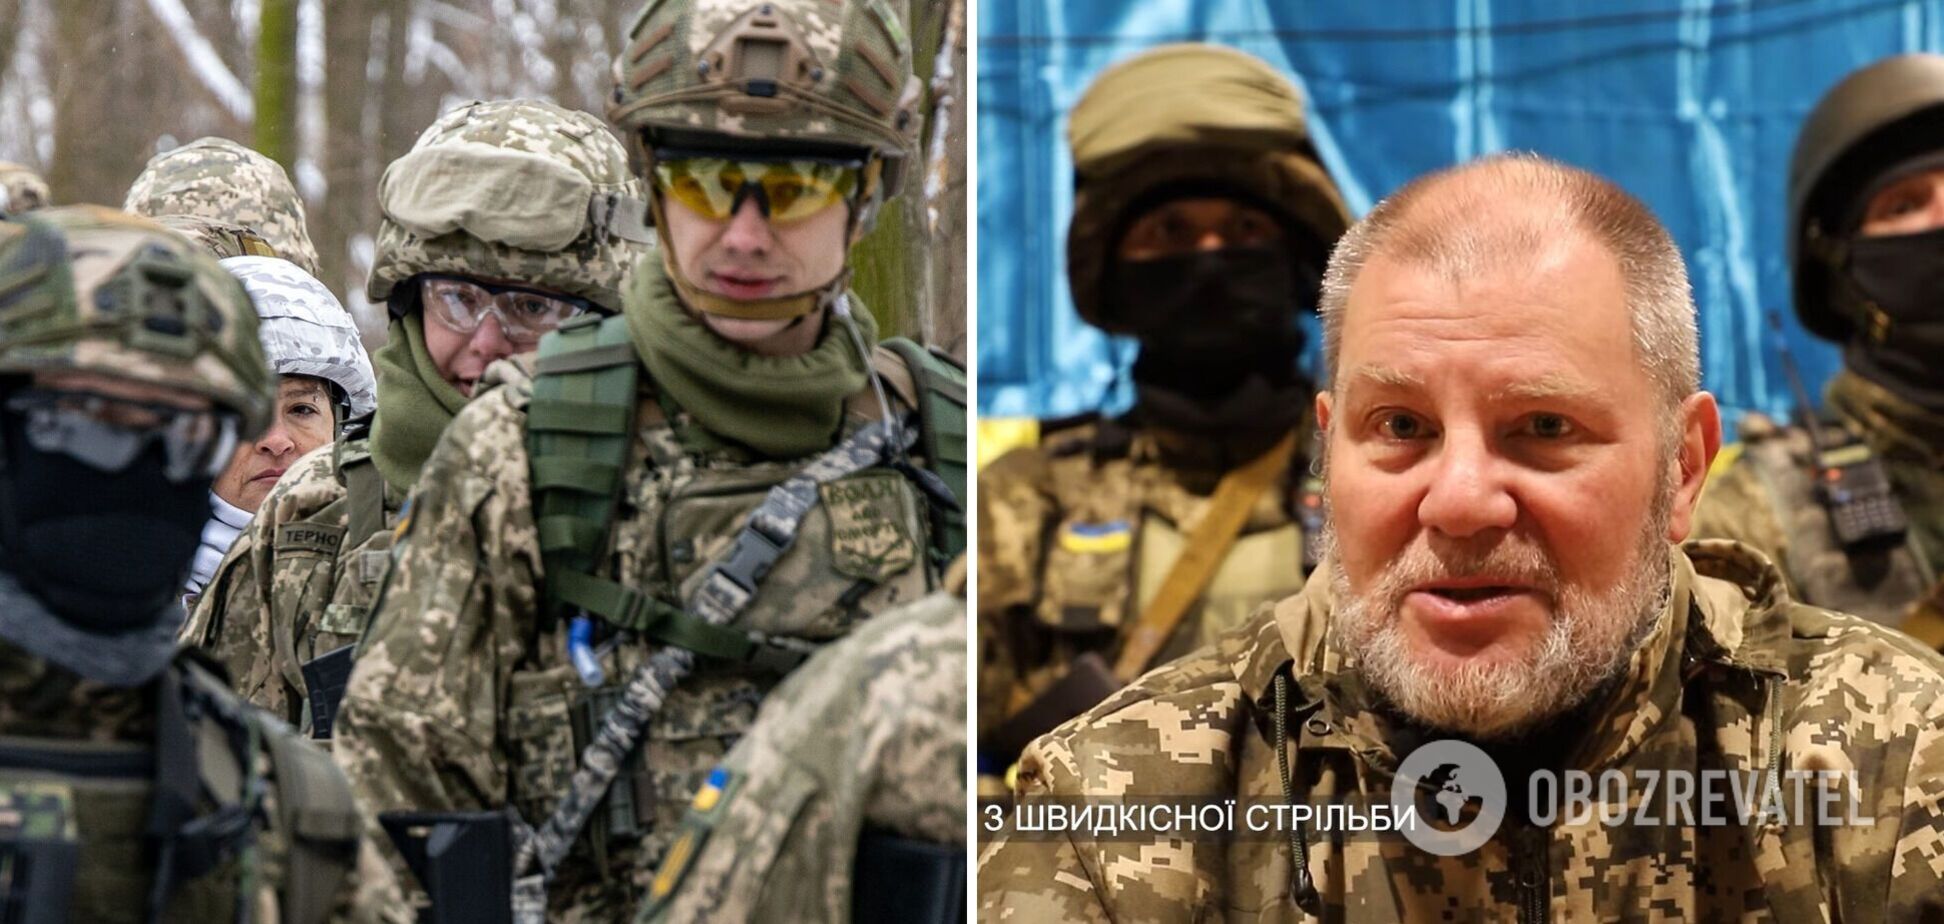 'Украина борется за всю Европу': к теробороне Киева присоединился французский ветеран 'Иностранного легиона'. Видео